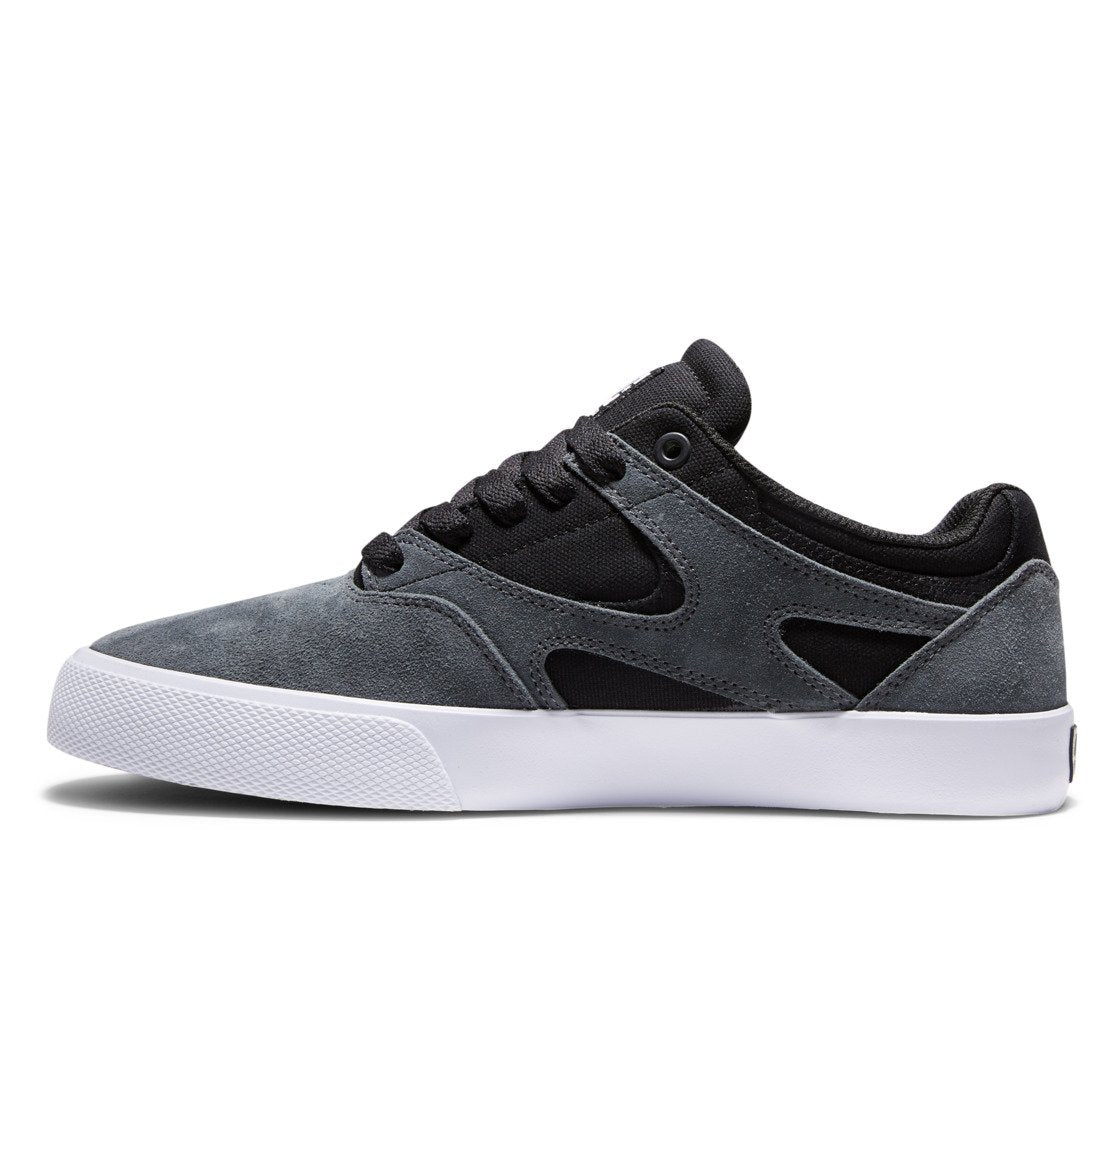 DC Kalis Vulc Shoes Grey/Black/Grey Men's Skate Shoes DC 